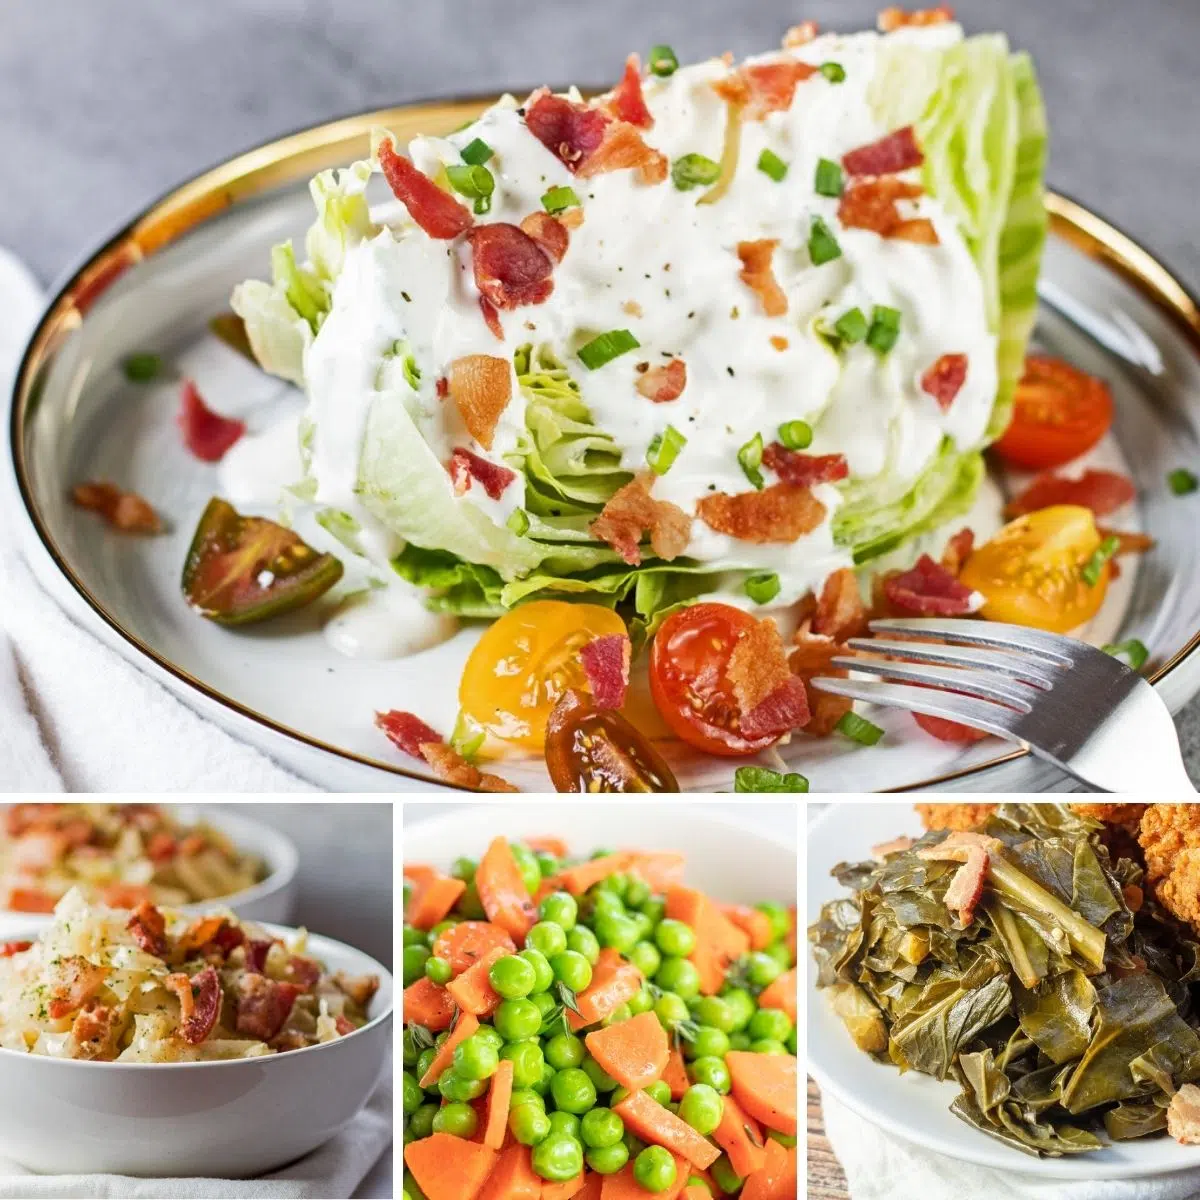 Nejlepší zeleninové přílohy podávané k jakémukoli jídlu, jak je znázorněno na těchto 4 receptech na obrázku koláže.